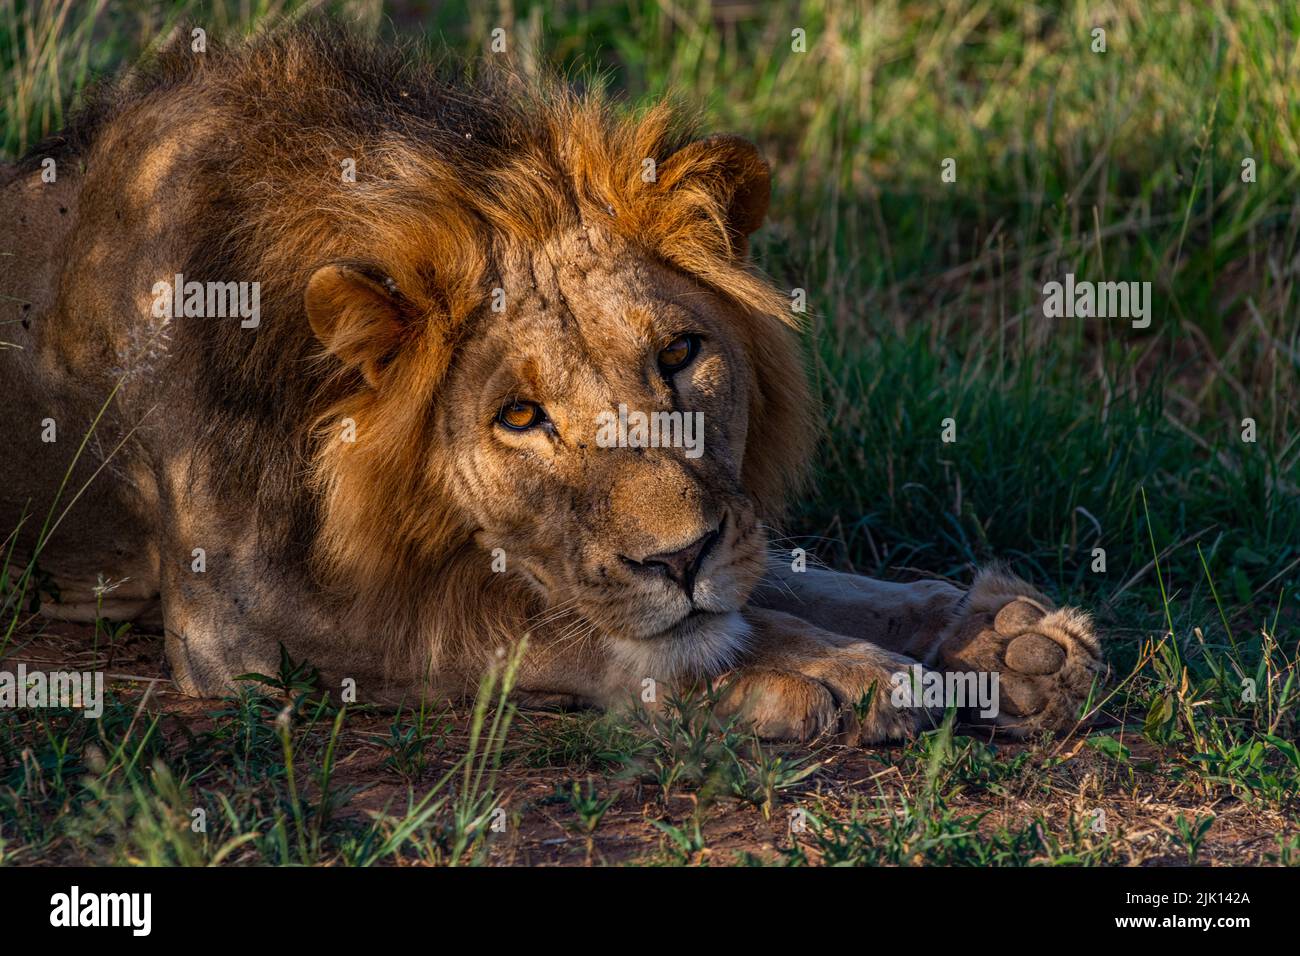 Lion (Panthera leo), réserve nationale de Buffalo Springs, parc national de Samburu, Kenya Banque D'Images